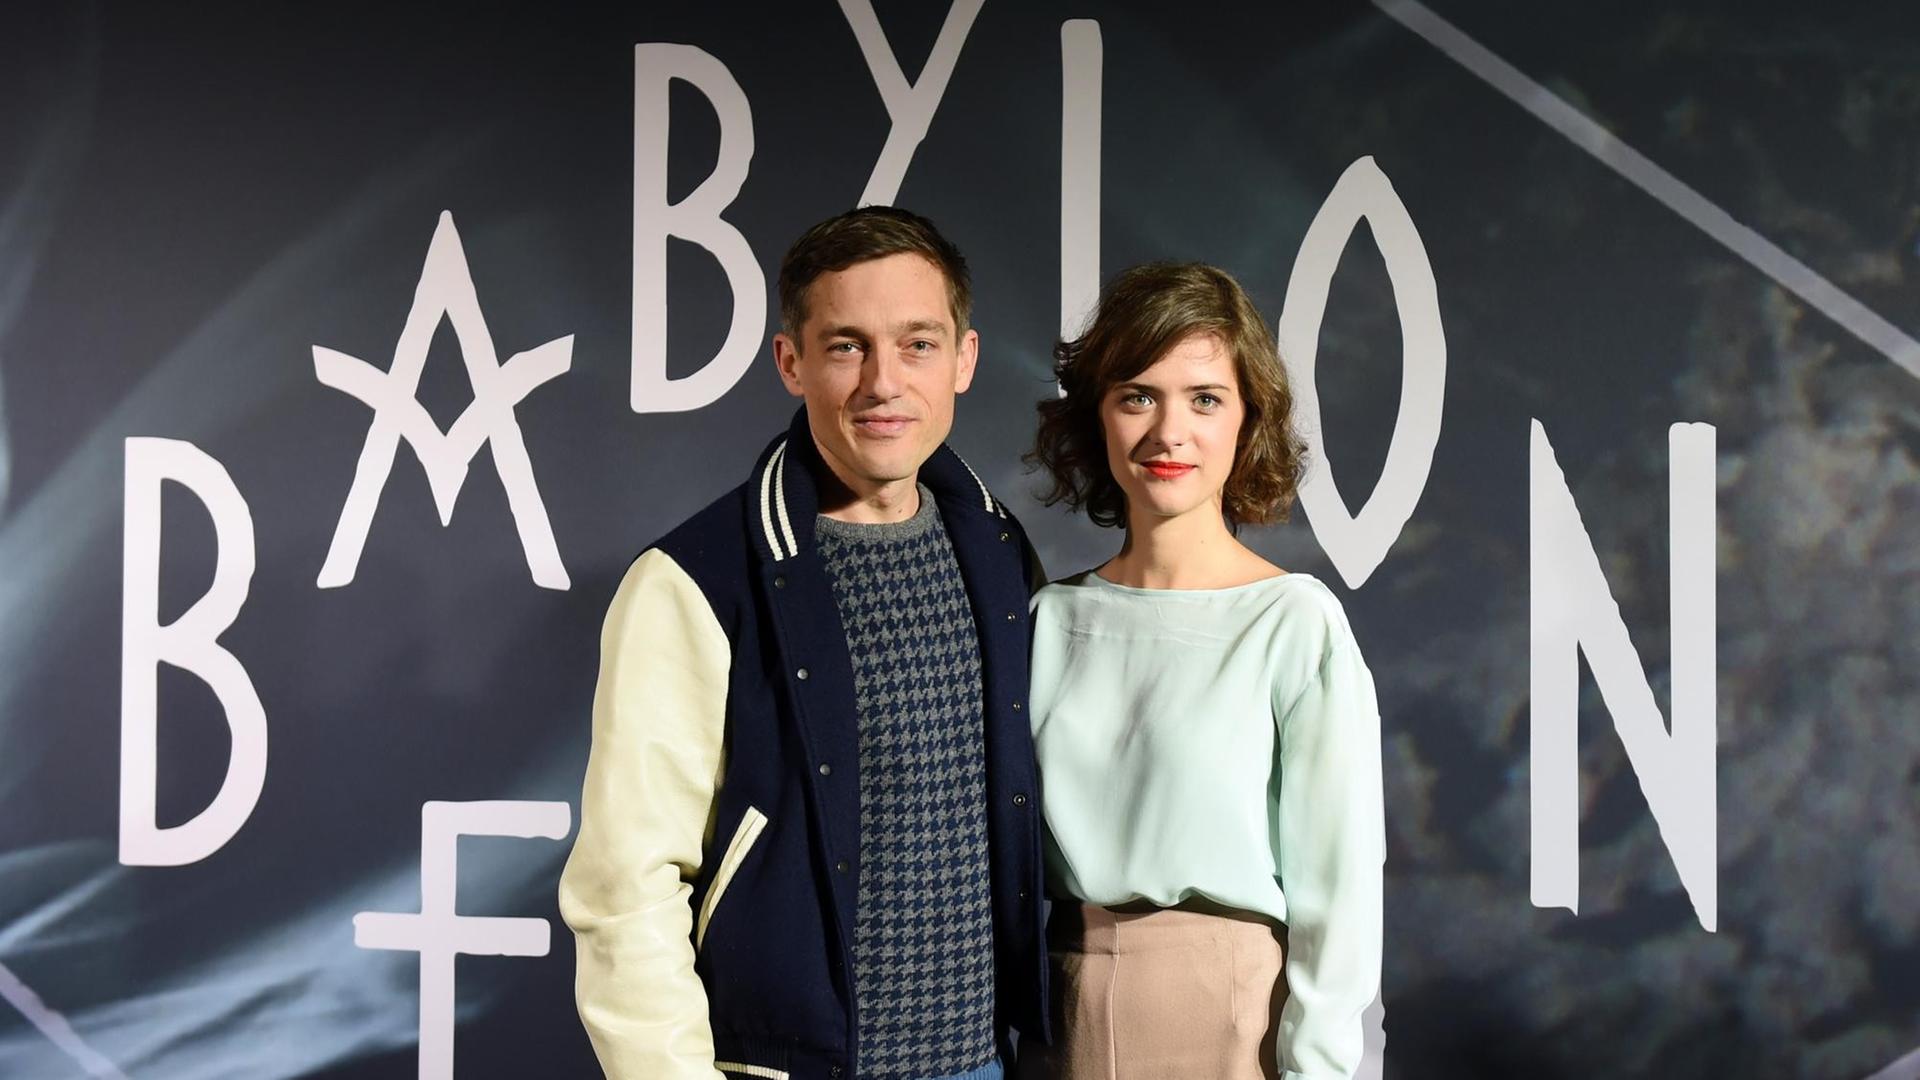 Die Schauspieler Volker Bruch als Gereon Rath und Liv Lisa Fries als Charlotte posieren am 10.02.2016 in Berlin bei einem Pressetermin zur Serie "Babylon Berlin".